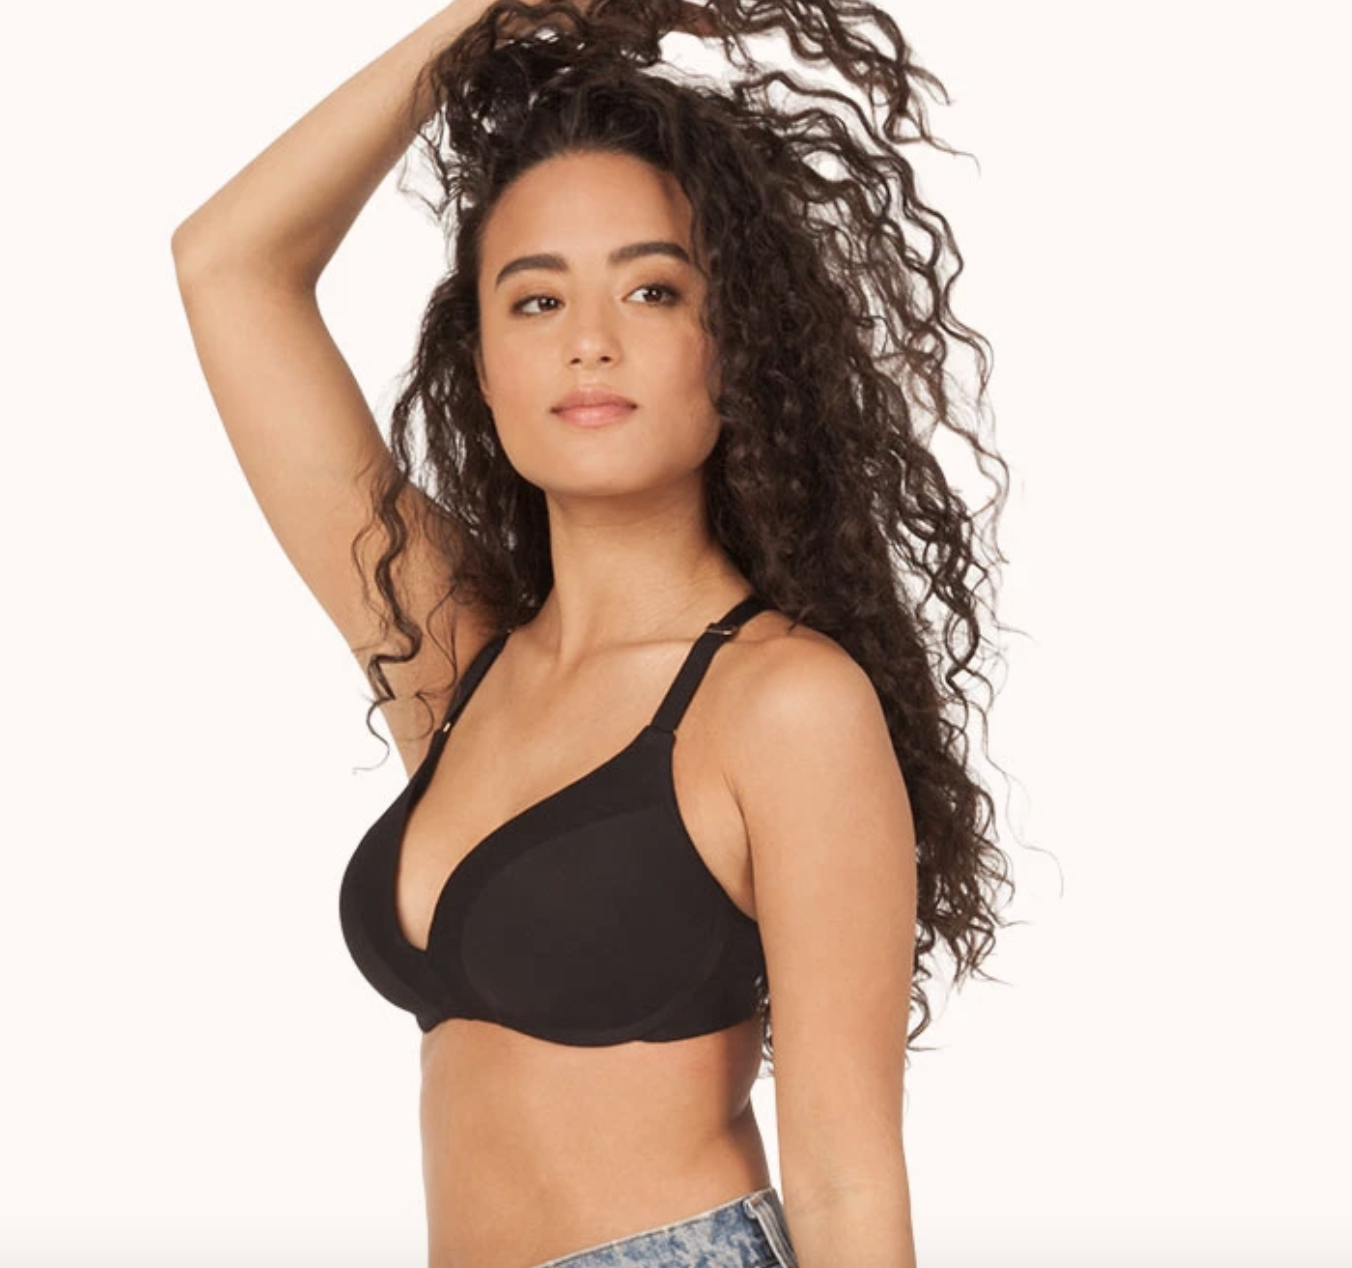 model wearing black bra